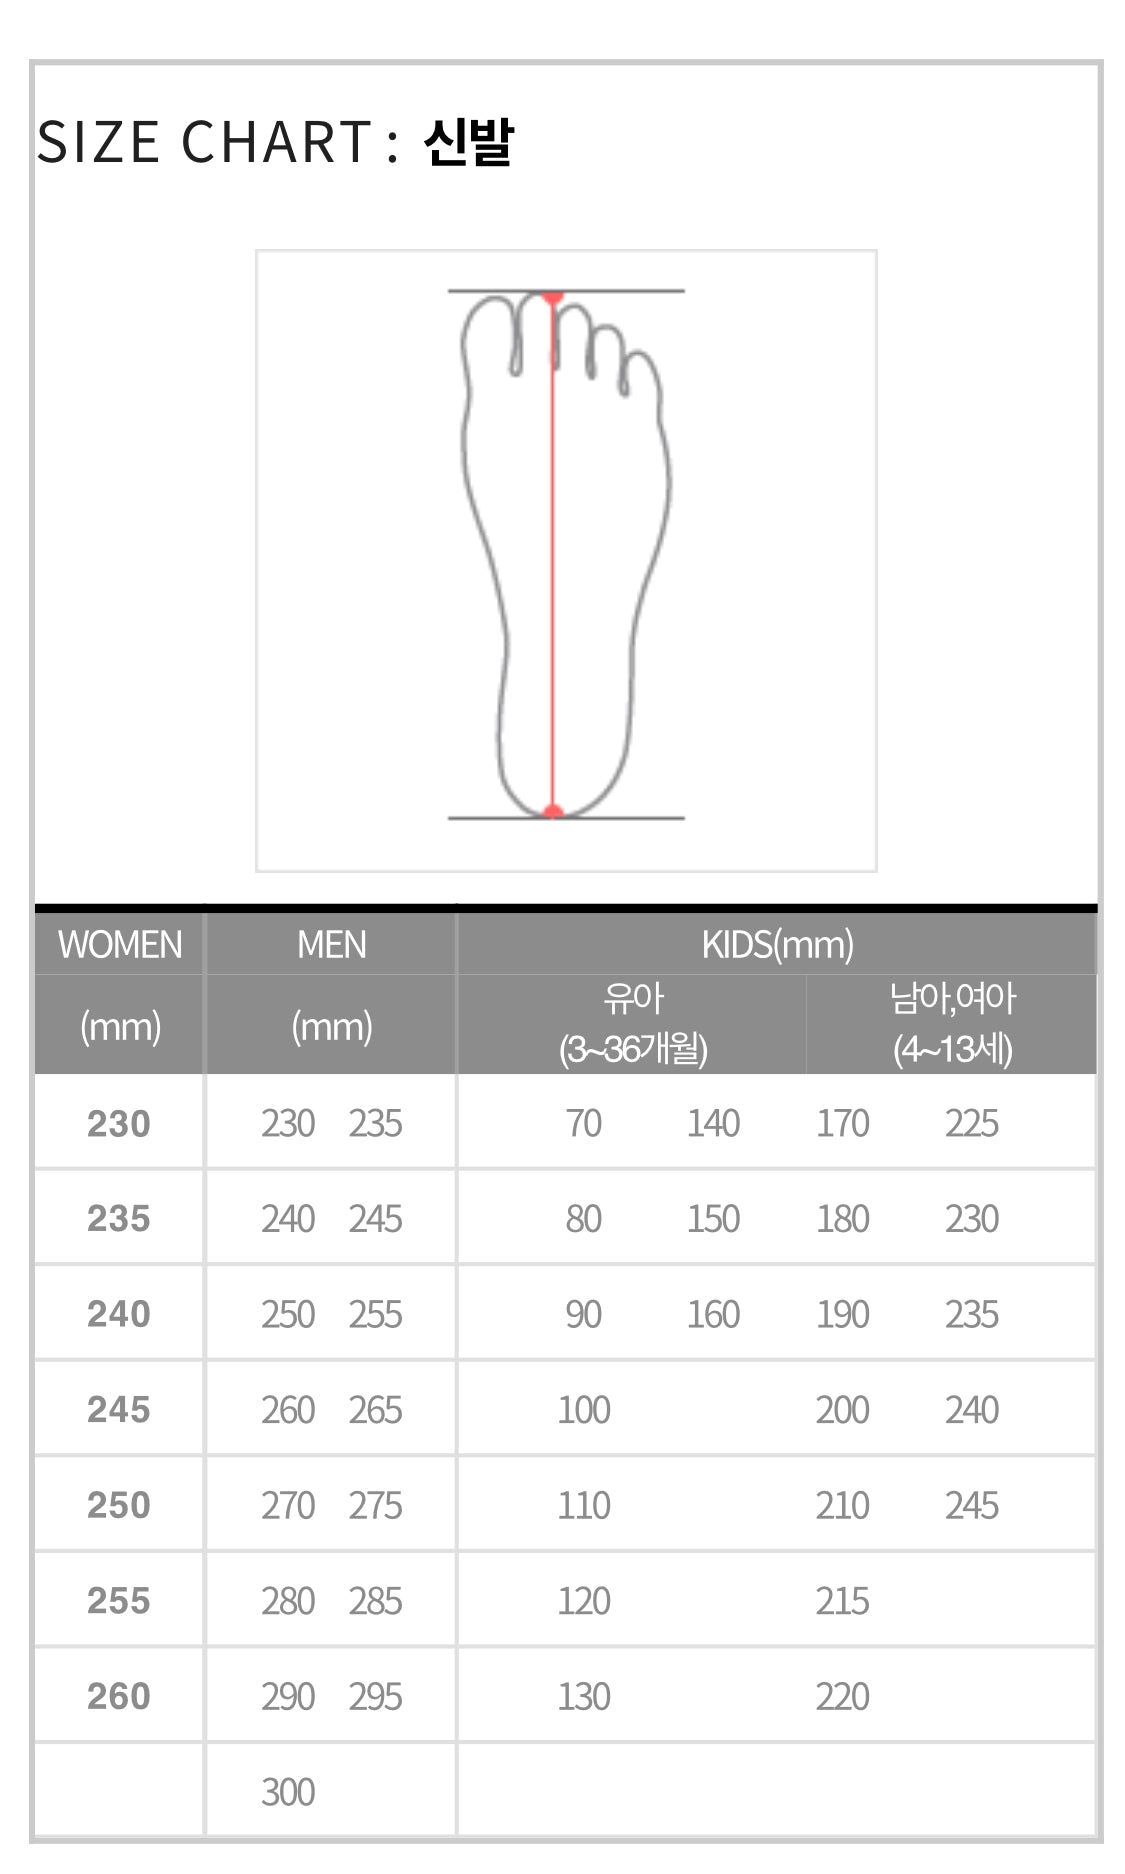 reebok bt21 size chart